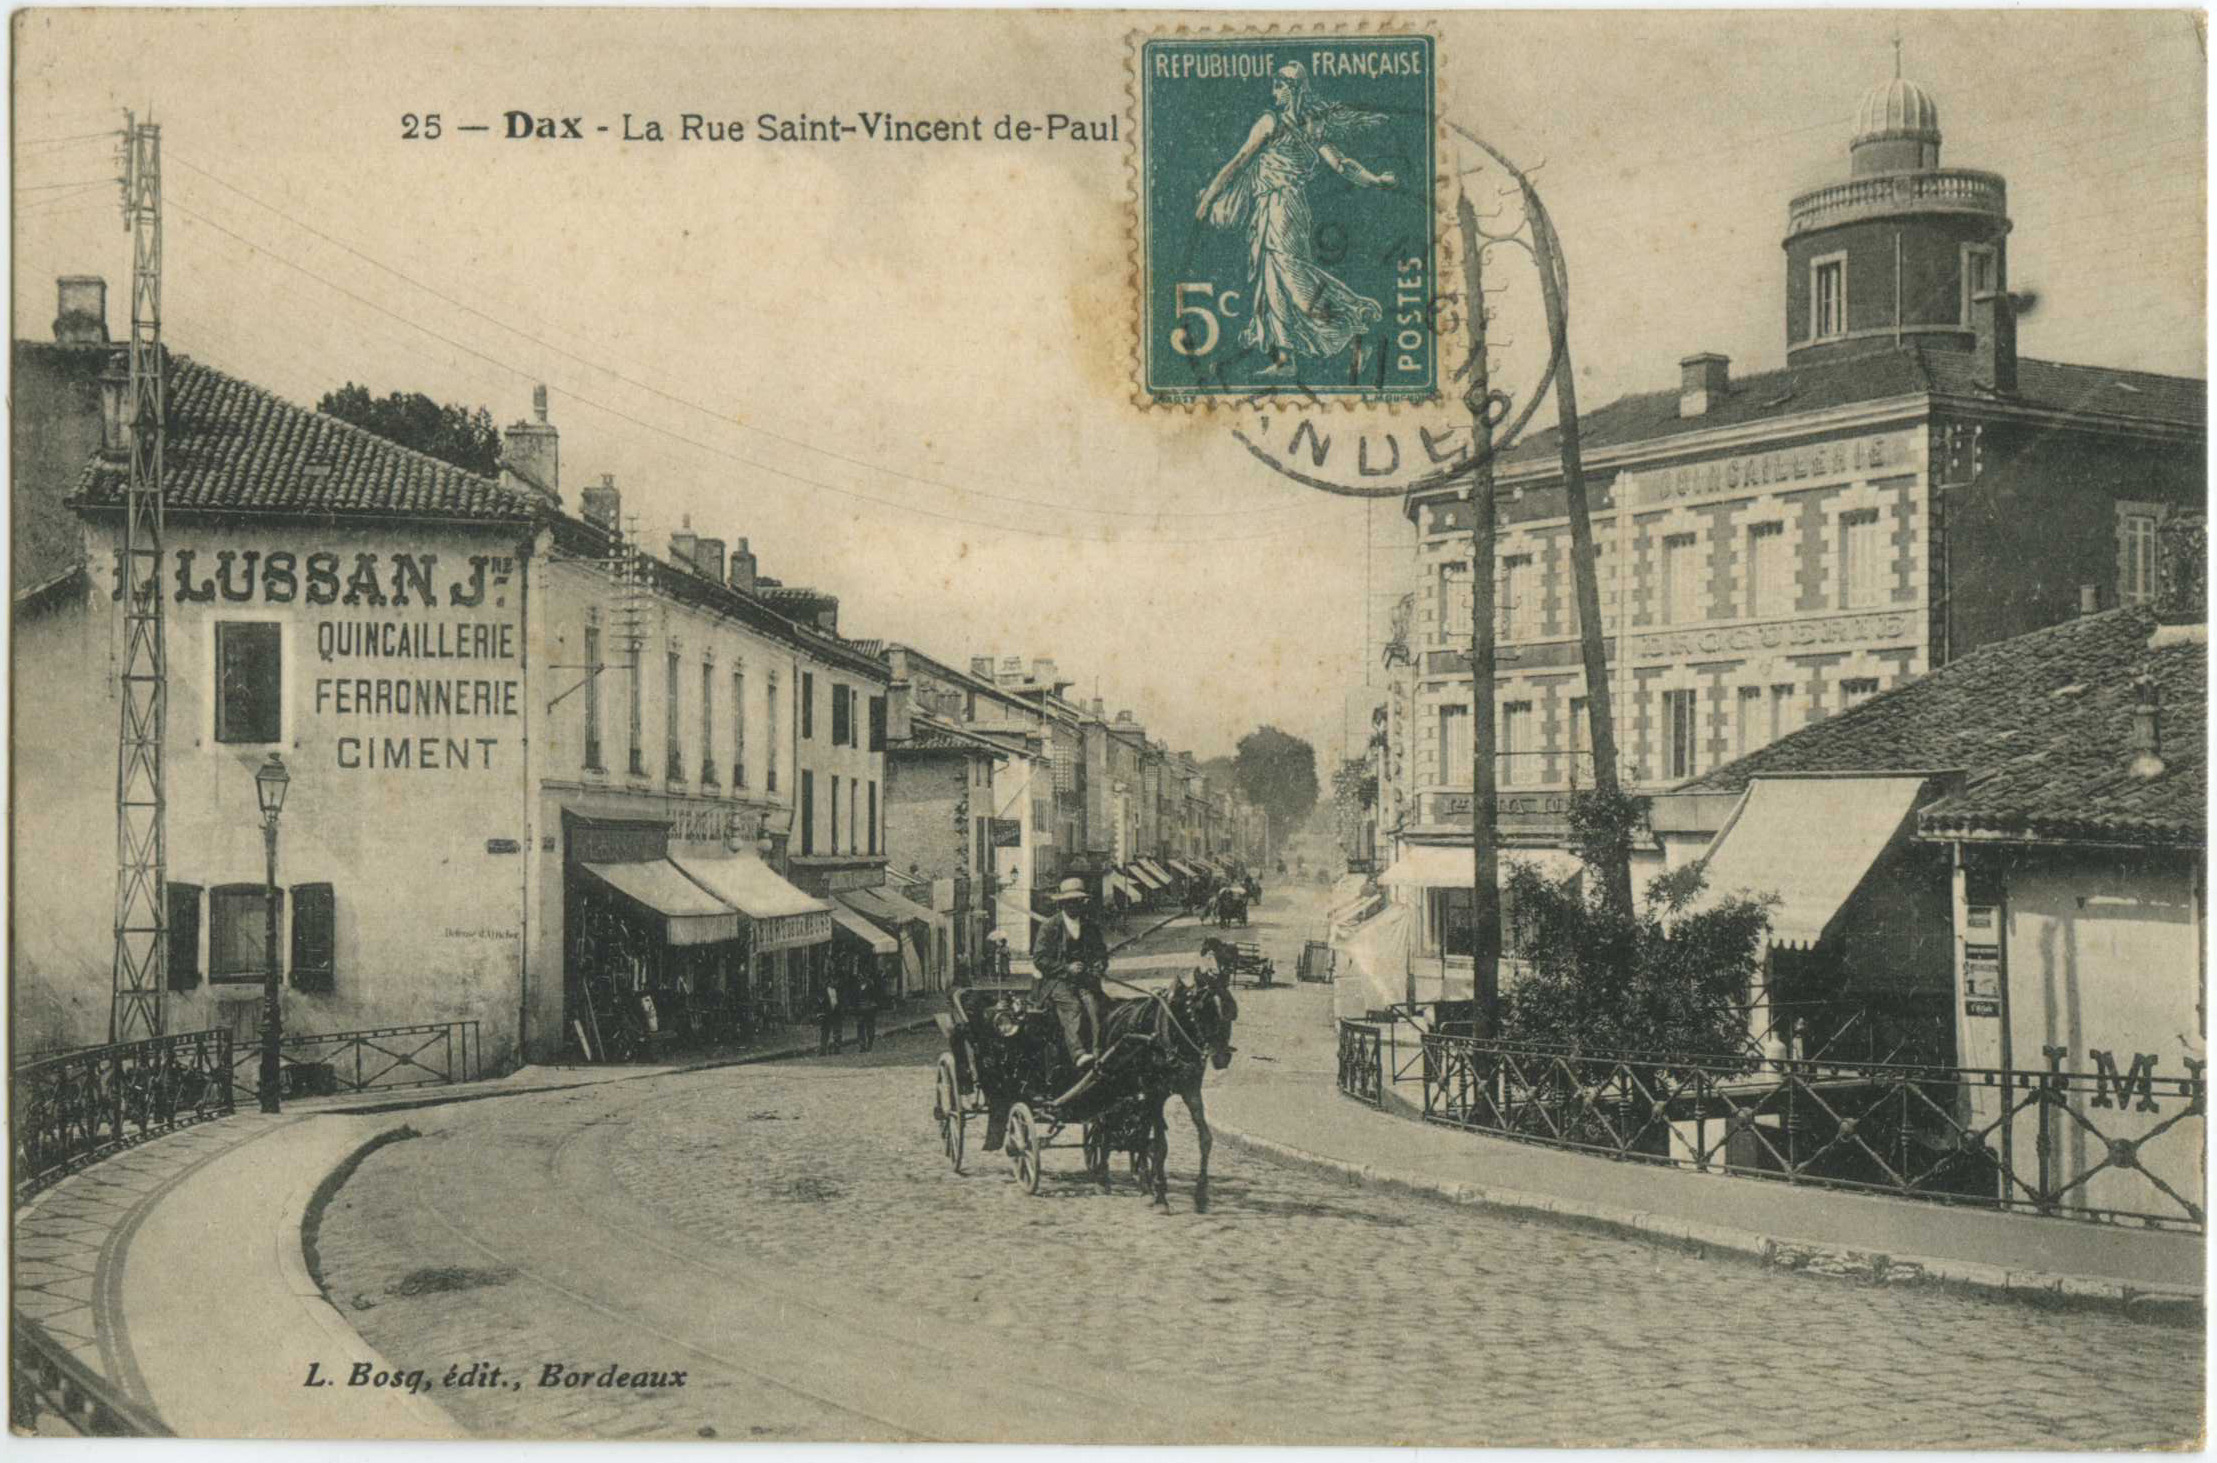 Dax - La Rue Saint-Vincent de-Paul